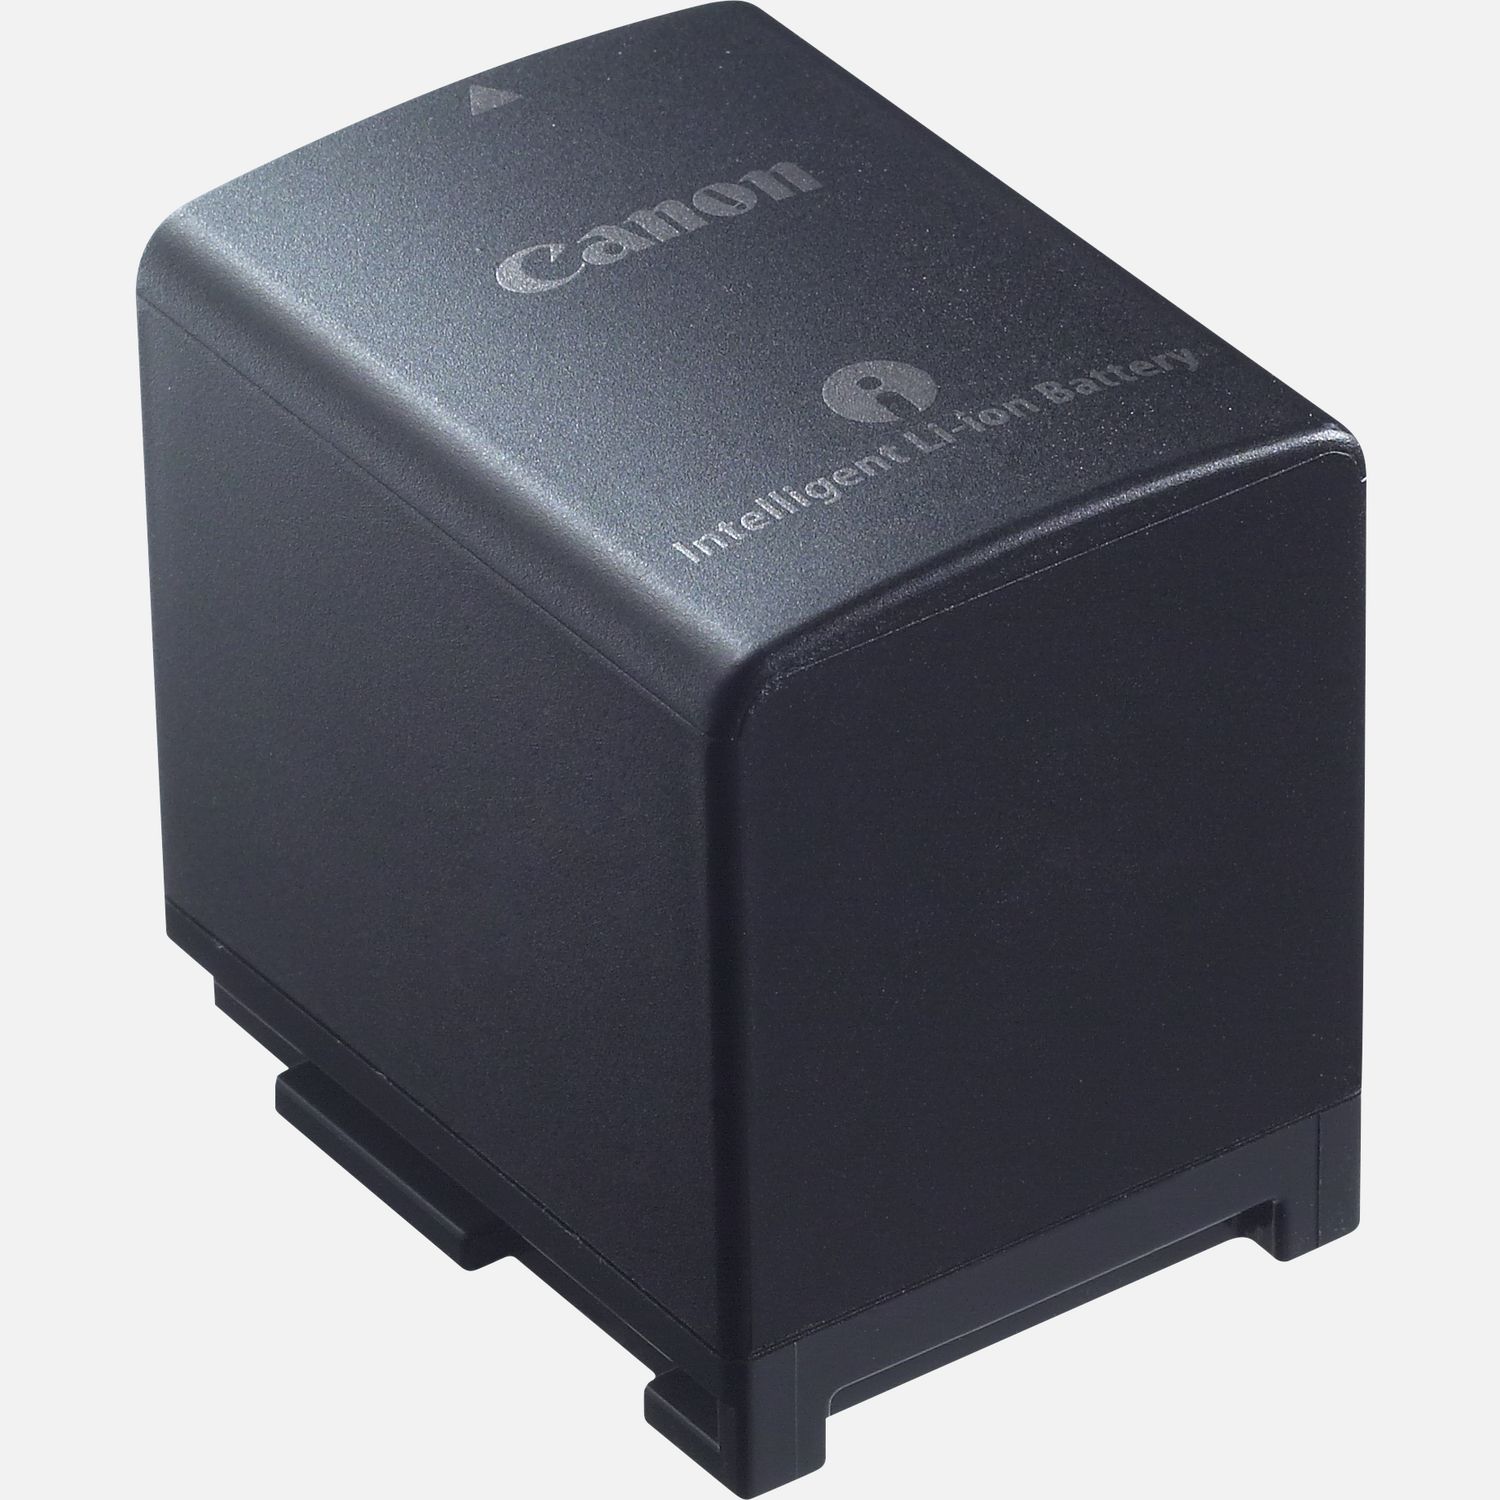 Unterwegs lnger aufnehmen mit dem Canon BP-820 Lithium-Ionen-Akku. Mit der Lithium-Ionen-Technologie sorgt dieser leistungsstarke Akku dafr, dass du mit einer einzigen Komplettladung deine Kamera optimal nutzen kannst  und das ganz ohne Memory-Effekt, wenn du den Akku immer aufldst, bevor er vollstndig entleert ist. Dieser Akku ist ideal als Zusatzakku in der Ausrstung oder als Ersatz fr den Akku des kompatiblen Camcorders.  Vorteile      Ein Ersatzakku fr deinen kompatiblen Camcorder          Lithium-Ionen-Technologie fr lange anhaltende Akkuladungen          Akkus ohne Memory-Effekt          Bei kompakten Maen und einem geringen Gewicht sind Lithium-Ionen-Akkus besonders leistungsstark          Lieferumfang       Akku BP-820            Kompatibilitt       XA11         XA15         LEGRIA HF G50         LEGRIA HF G26